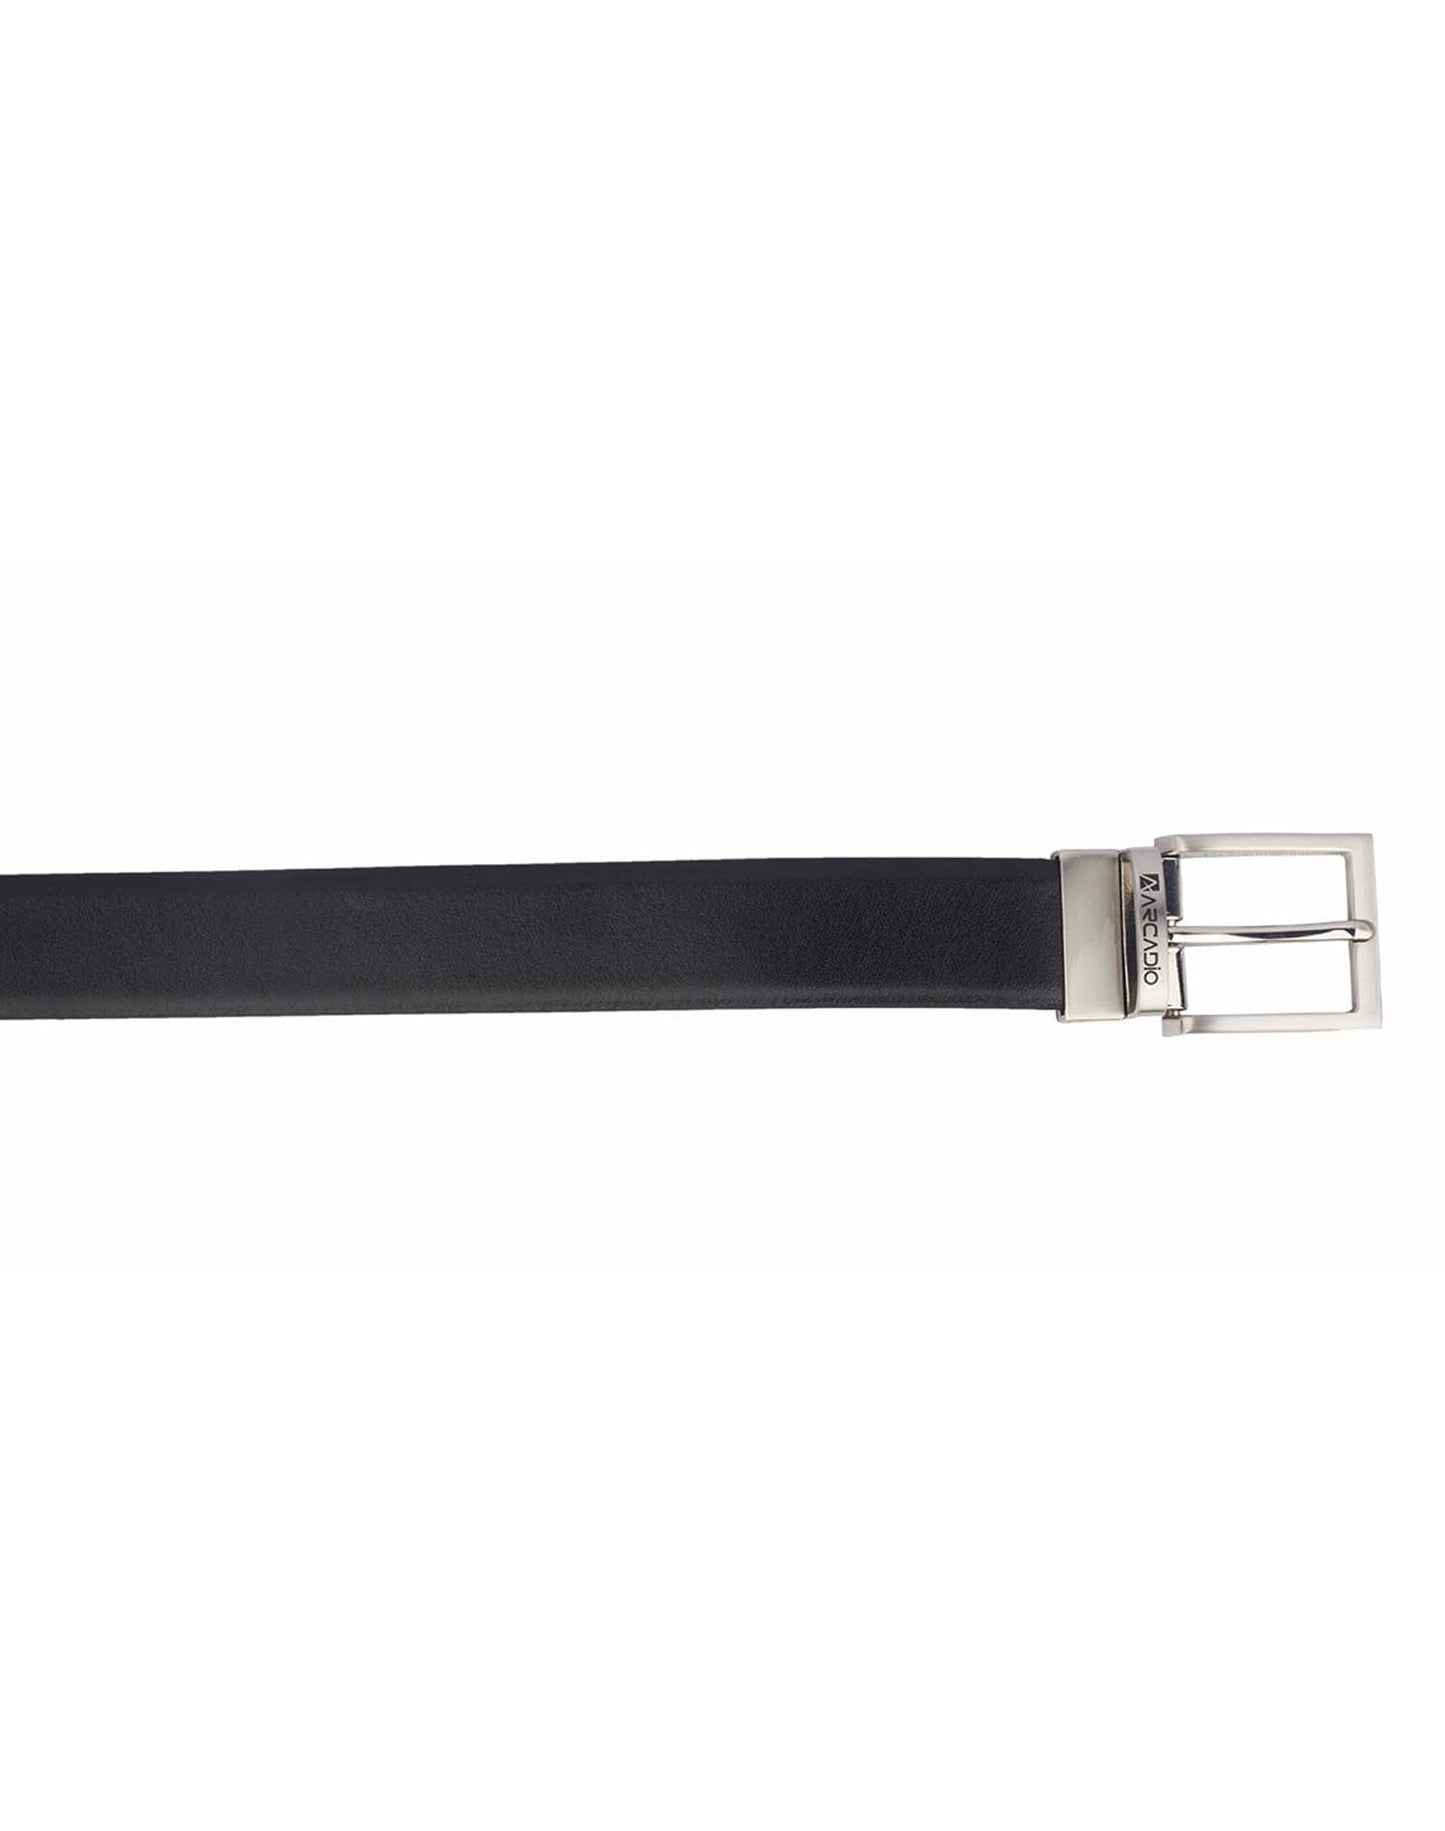 BRUSH HOUR - Brushed Leather Belt - ARB1007 – ARCADIO